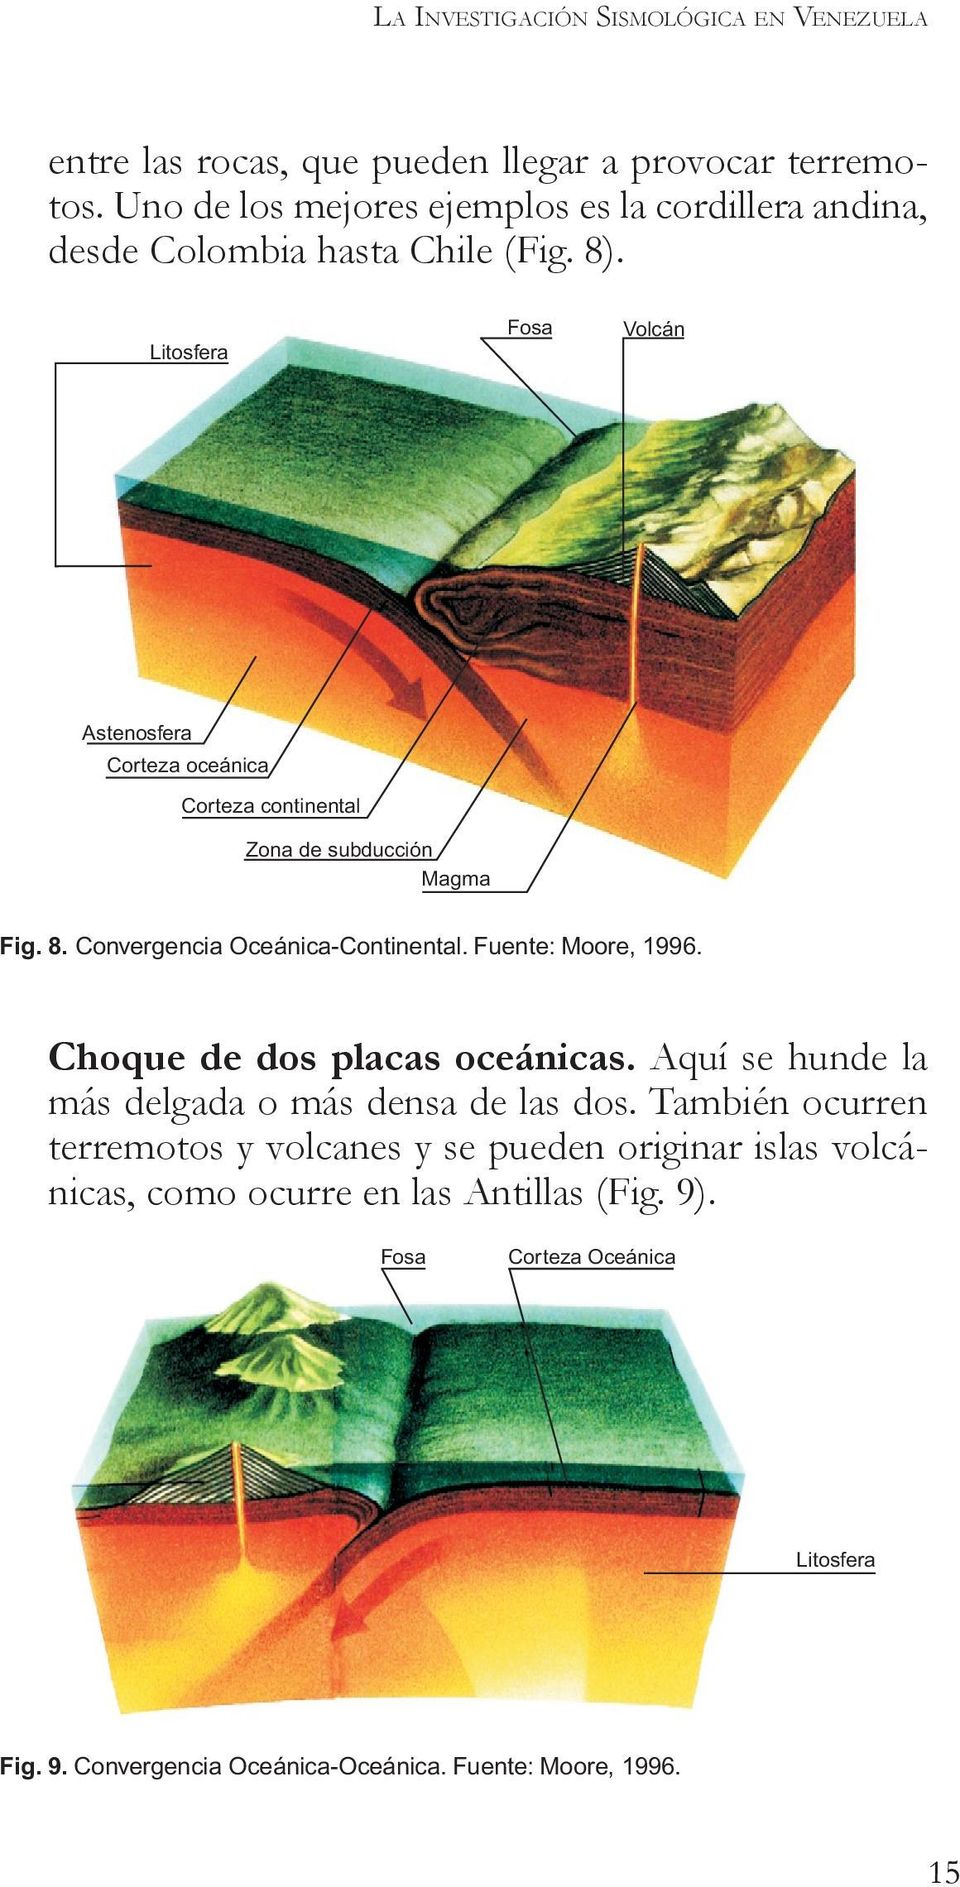 Fuente: Moore, 1996. Choque de dos placas oceánicas. Aquí se hunde la más delgada o más densa de las dos.